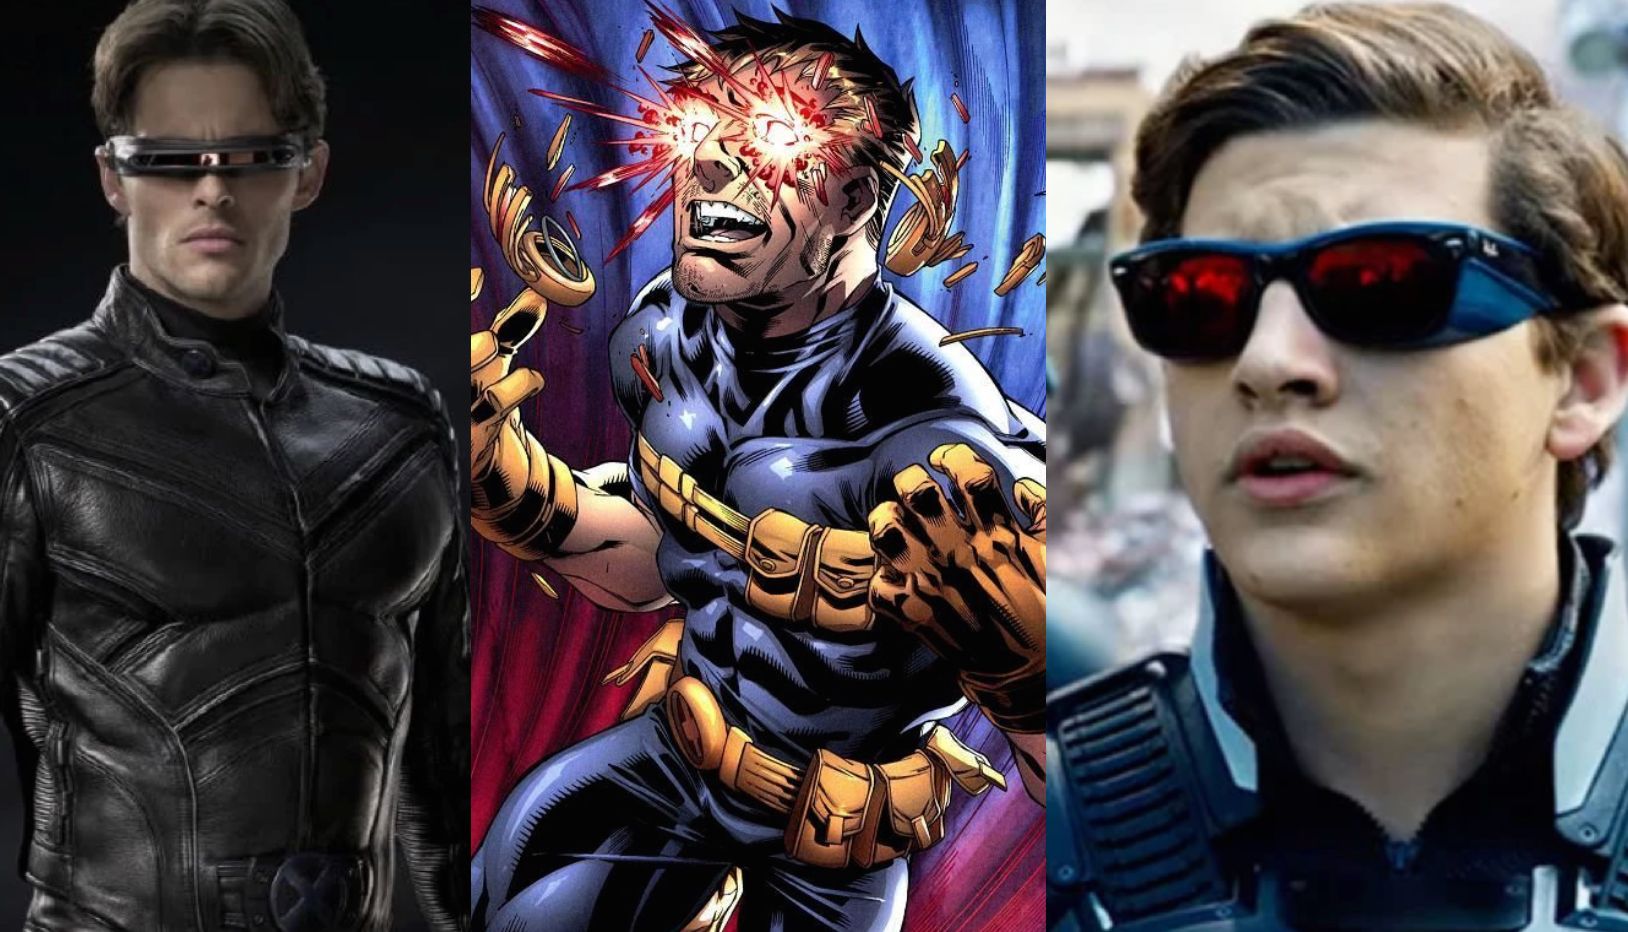 Scott Summers Cyclops in X-Men Movies and Comics